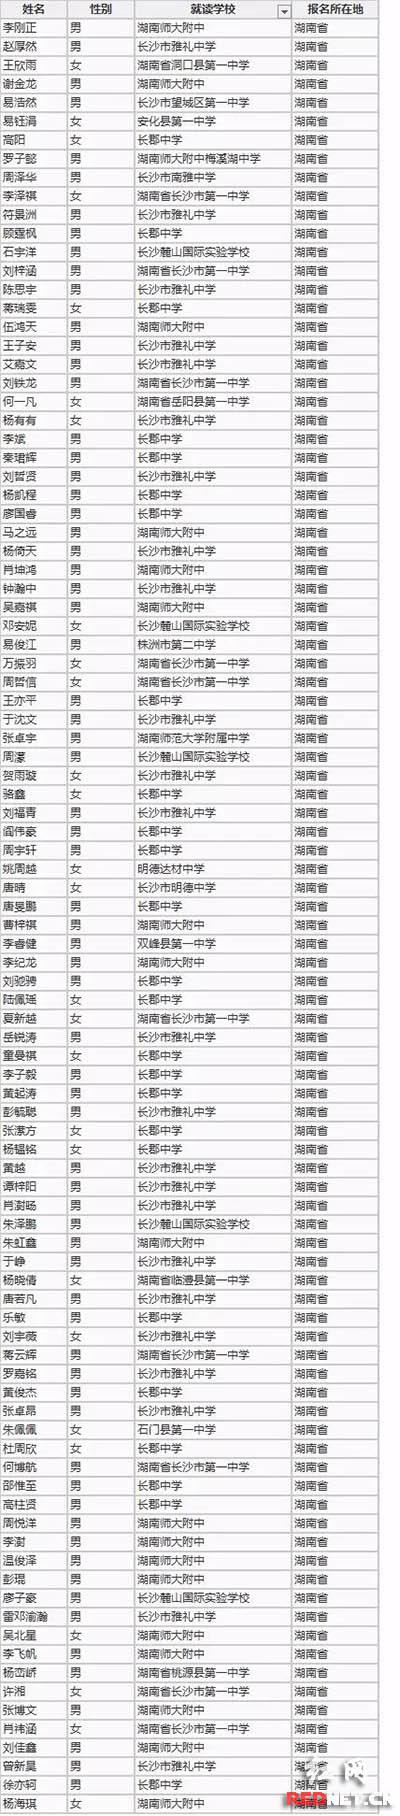 湖南考生96人入选清华大学自主招生。